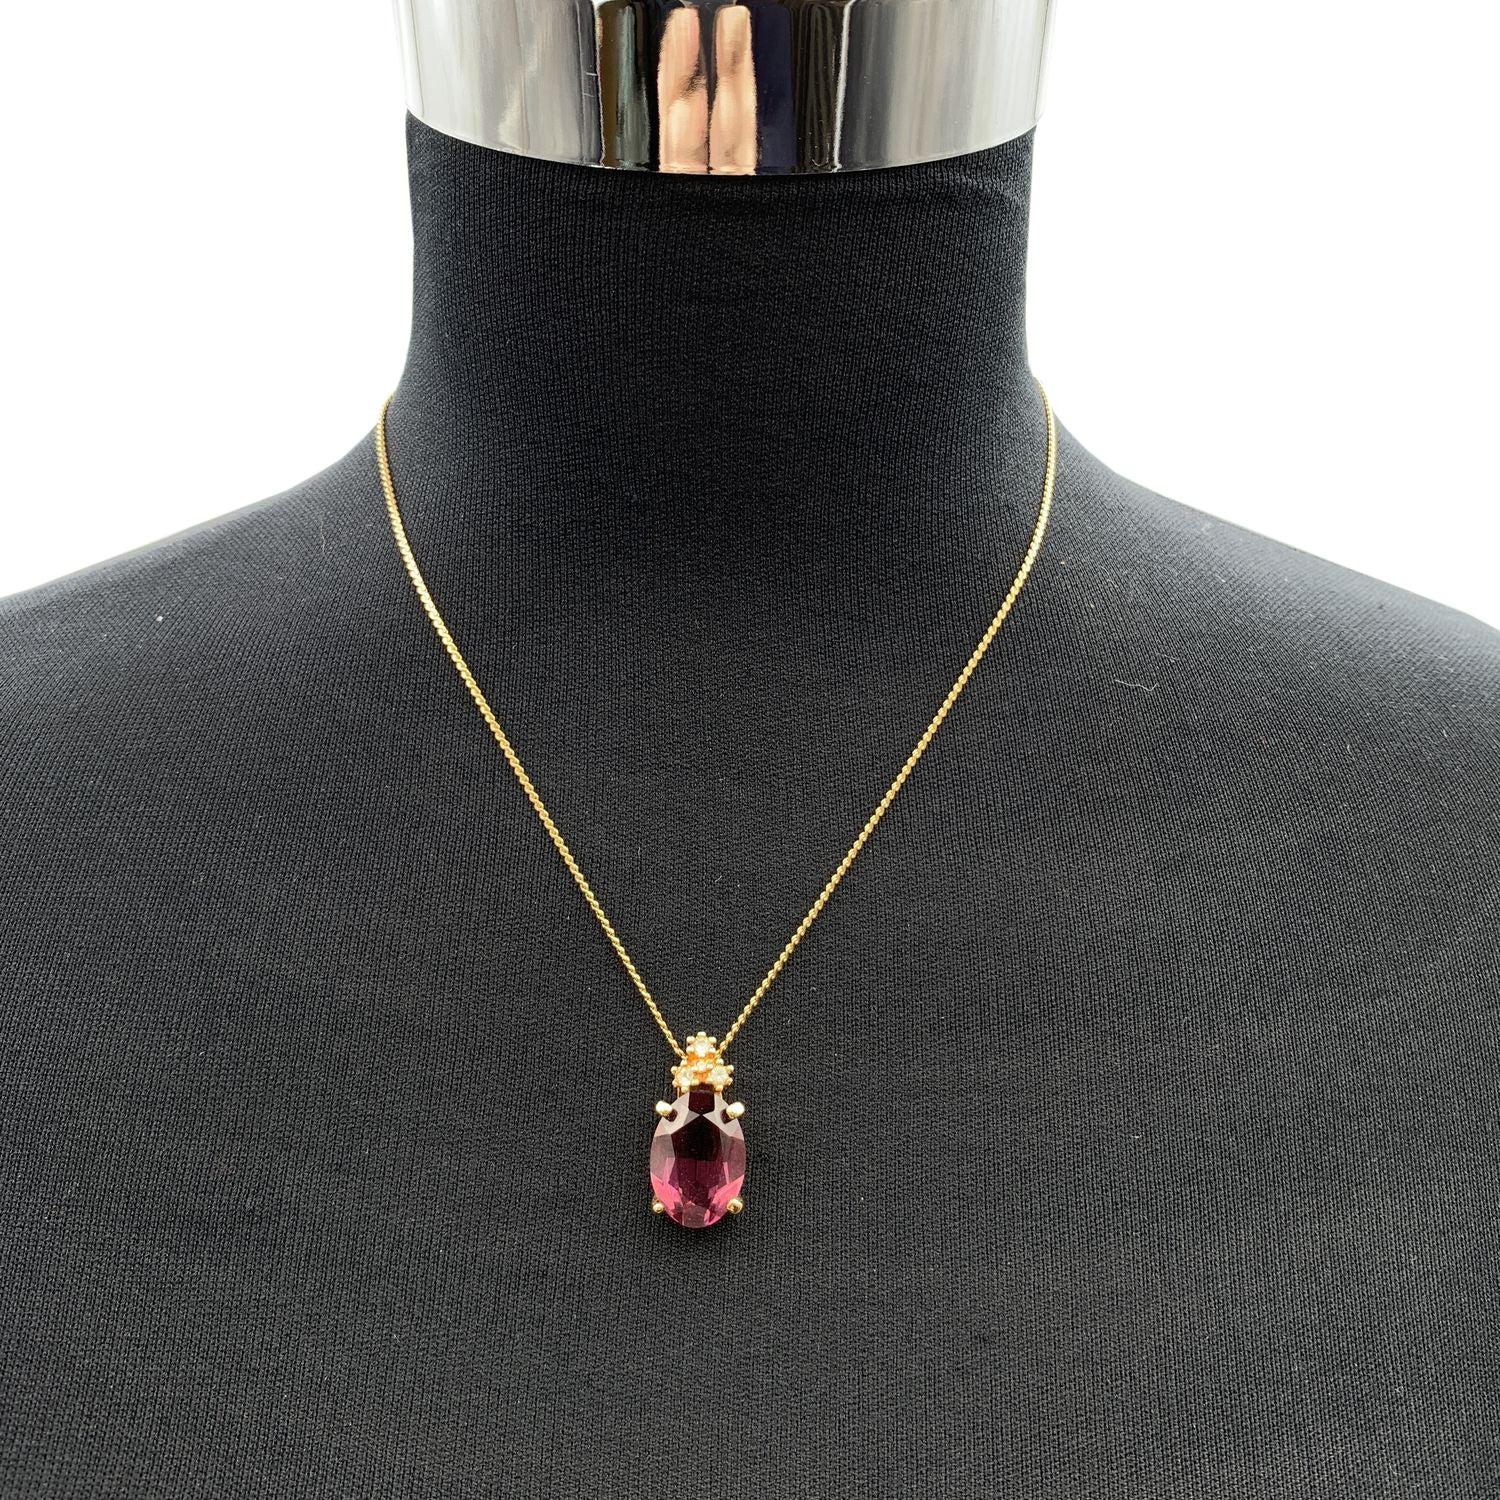 Collier vintage Christian Dior en chaîne de métal doré avec un cristal ovale violet suspendu par 3 petits strass blancs. Fermeture par anneau à ressort. Petite breloque CD à l'extrémité du collier. Longueur de la chaîne : environ 16.5 inches - 41.8